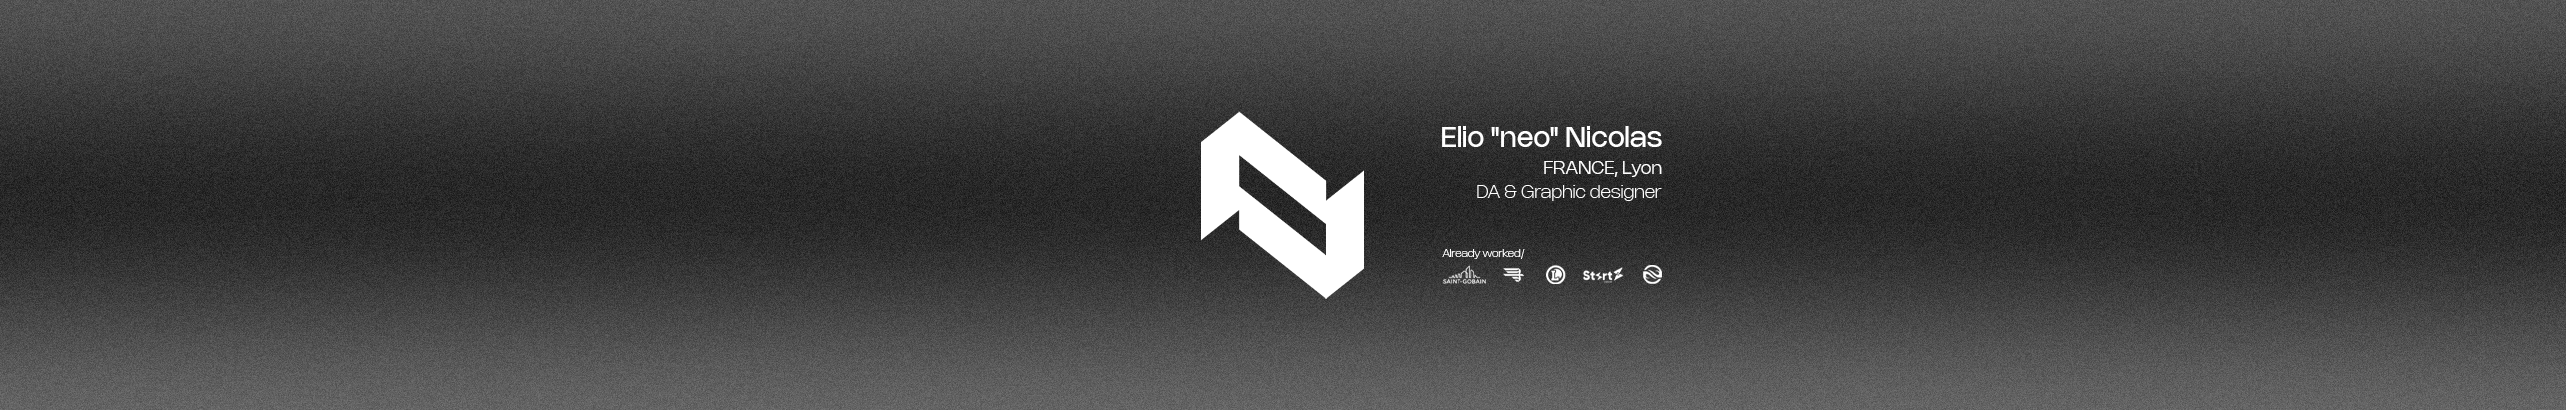 Elio Nicolas のプロファイルバナー